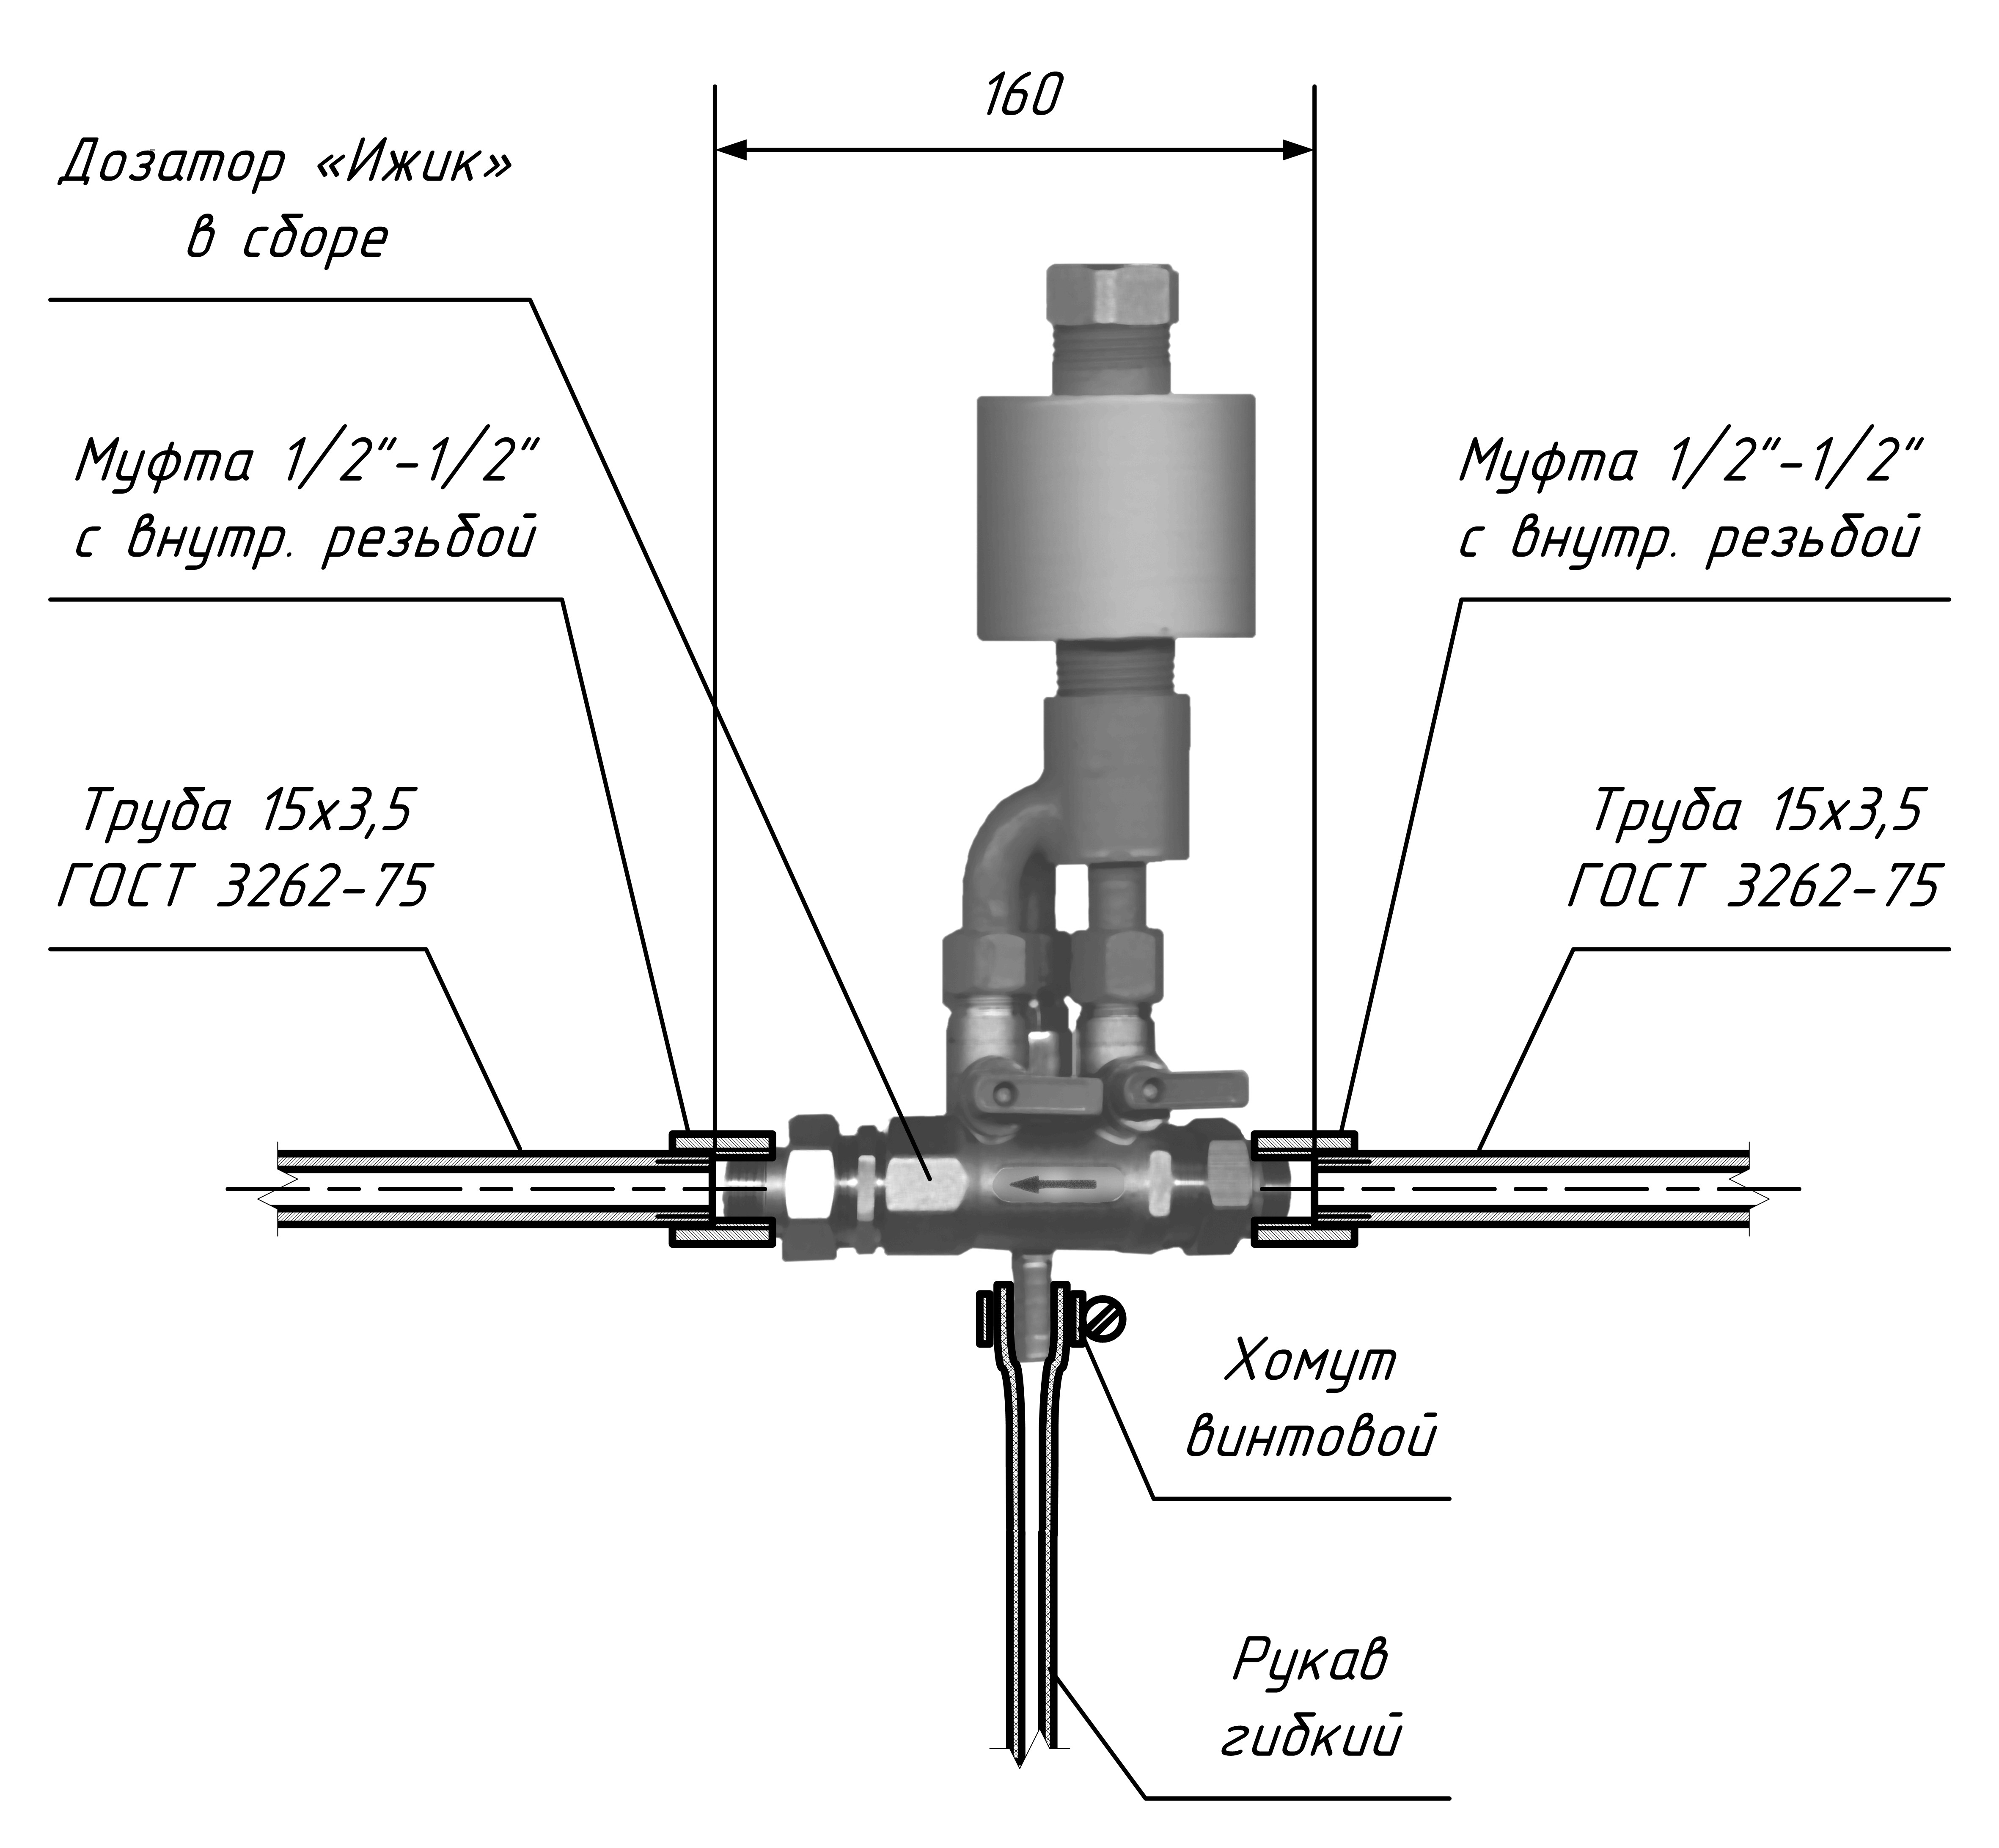  Схема монтажа мини-дозатора «Ижик»
на трубопроводе условным проходом 15 мм (1/2